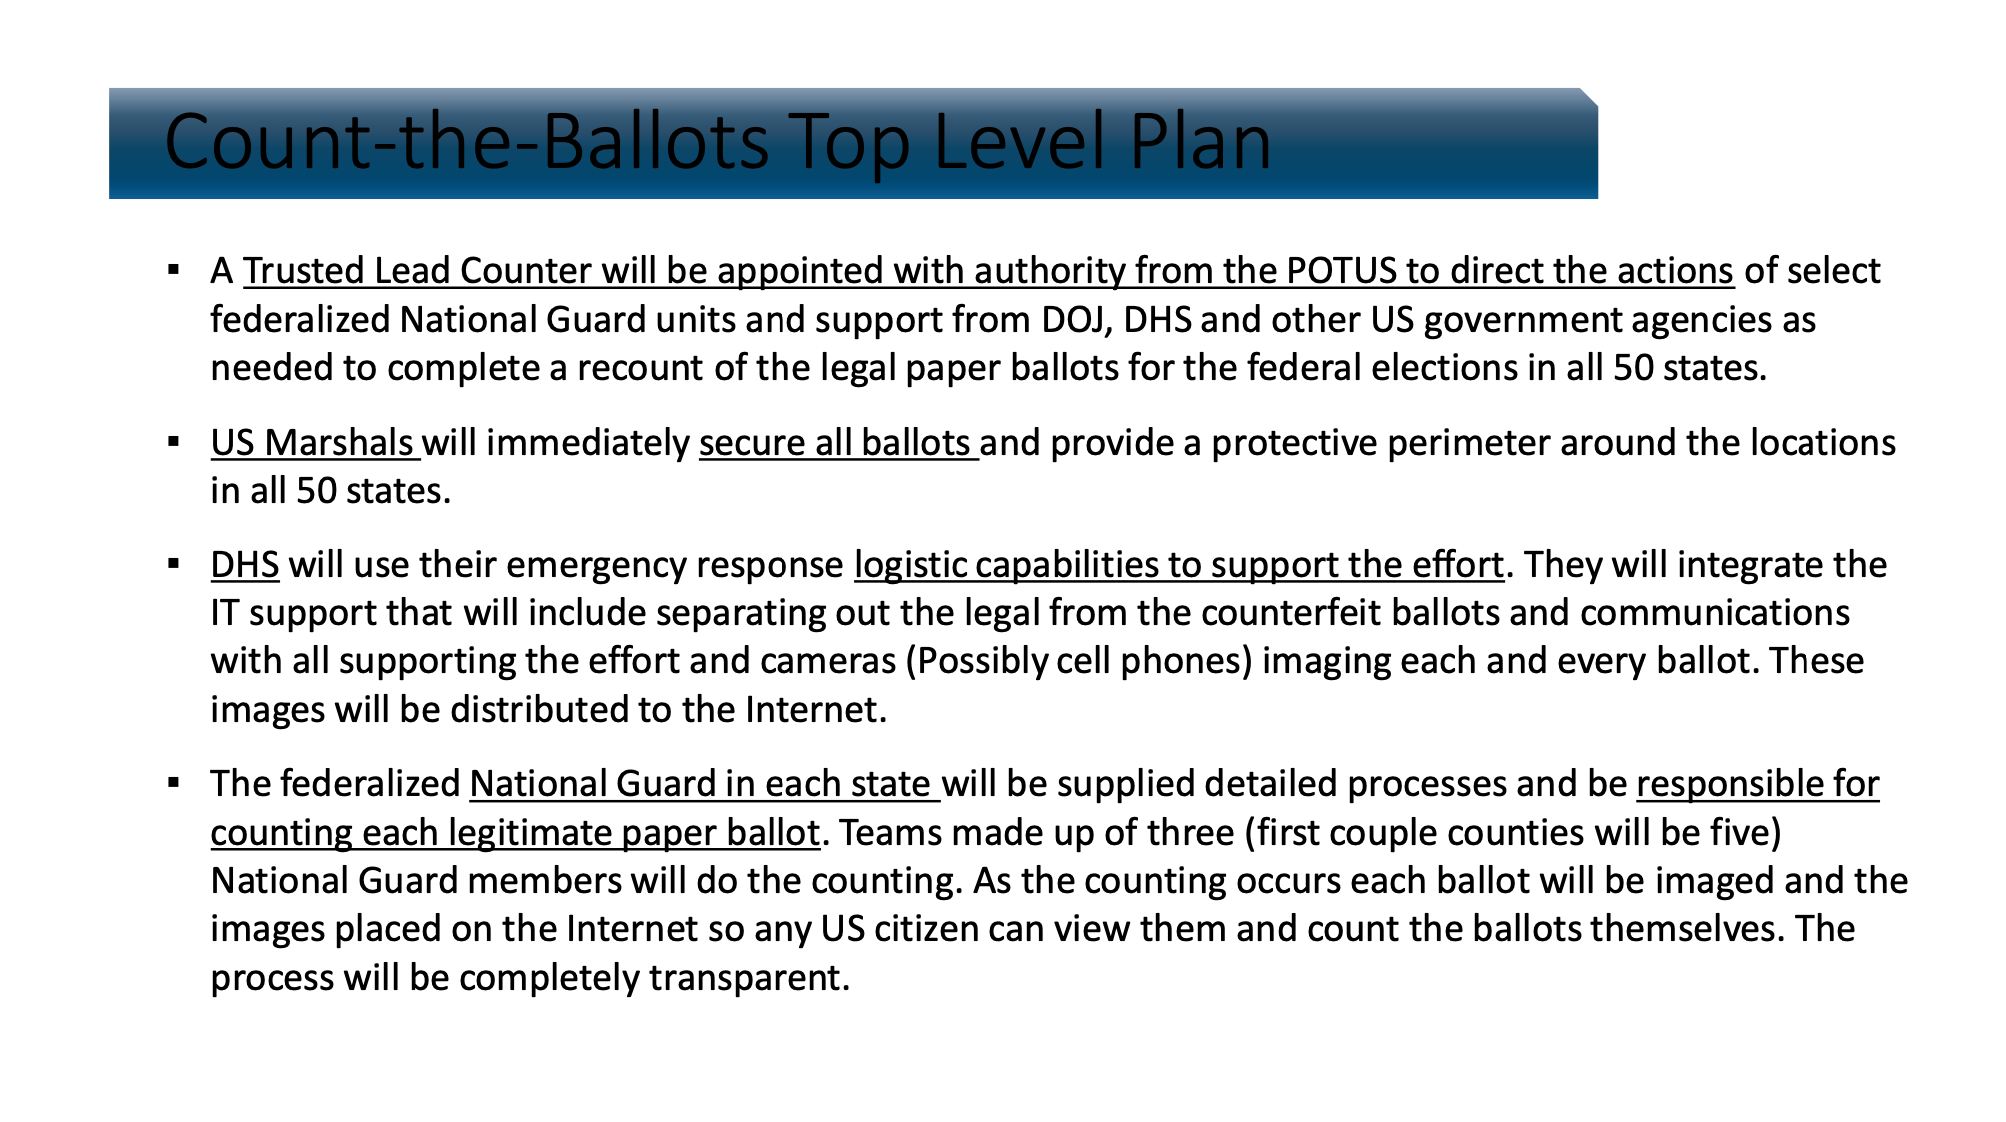 Esta diapositiva establece un plan para que las fuerzas federalizadas de la Guarda Nacional supervisen un recuento de los votos y que declaren a Trump como el ganador de la elección del 2020